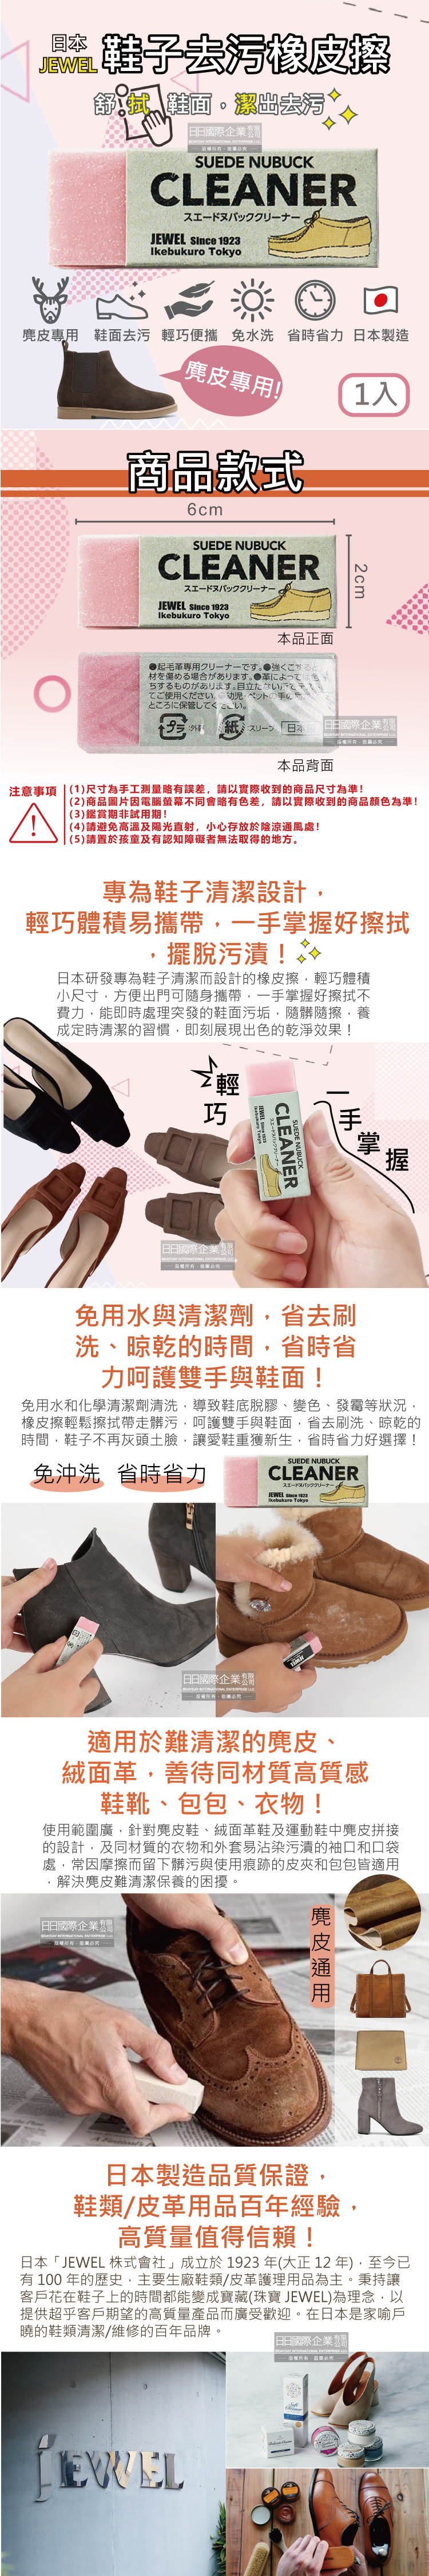 (清潔-鞋子)日本Jewel-麂皮鞋用橡皮擦-粉色1入介紹圖長條圖